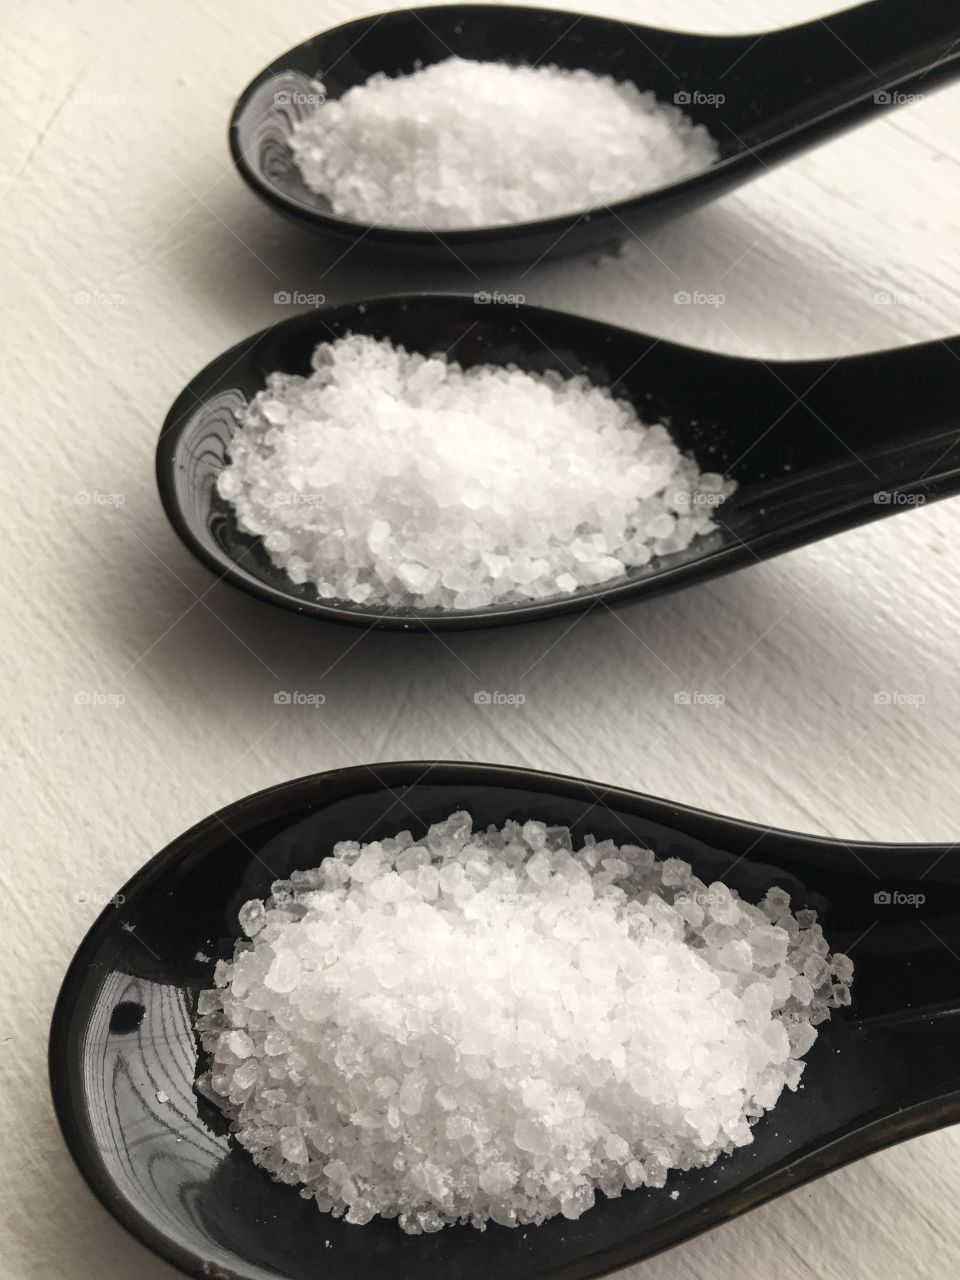 Three tablespoons of salt